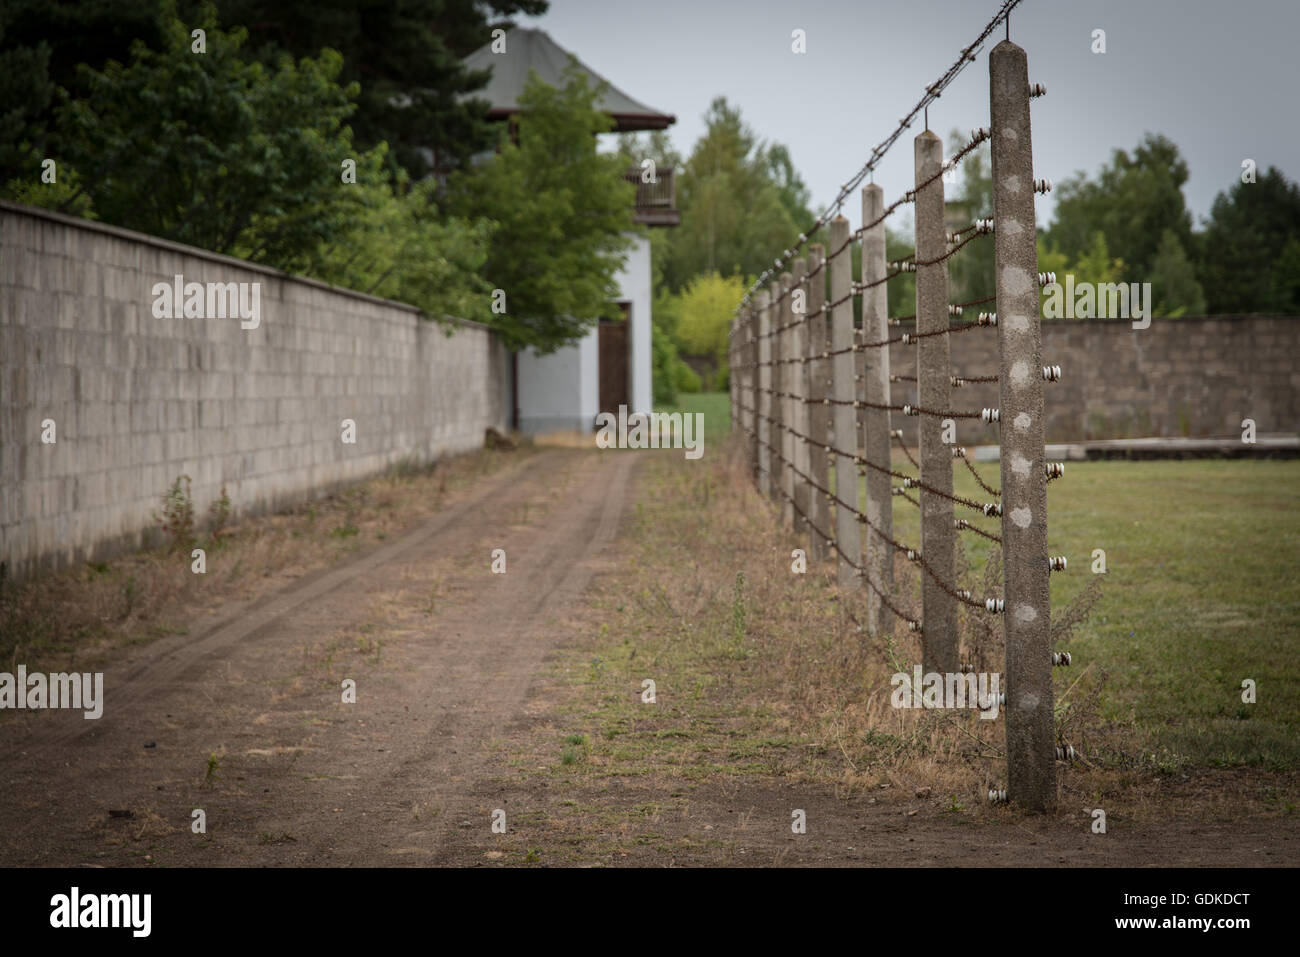 Sachsenhausen ist ein Nazi-Konzentrationslager, in der Gegend namens Sandhausen im September 1938 abgeschlossen (heute Sachsenhausen) von der Stadt Oranienburg, 35 Kilometer nördlich von Berlin. Seit 22. März 1936, hatte er als Arbeitslager für politische Gefangene tätig. Es war eines der größten Konzentrationslager in Deutschland, wo etwa 30.000 Häftlinge durch ein Erschießungskommando starben, von Not, Hunger, Ruhr und Lungenentzündung sowie medizinische Experimente. Viele waren auch mit LKW Auspuff beseitigt. Neben Juden die Lager Häftlinge waren vor allem politische Gefangene, Menschen beschuldigt, antisoziale oder d Stockfoto